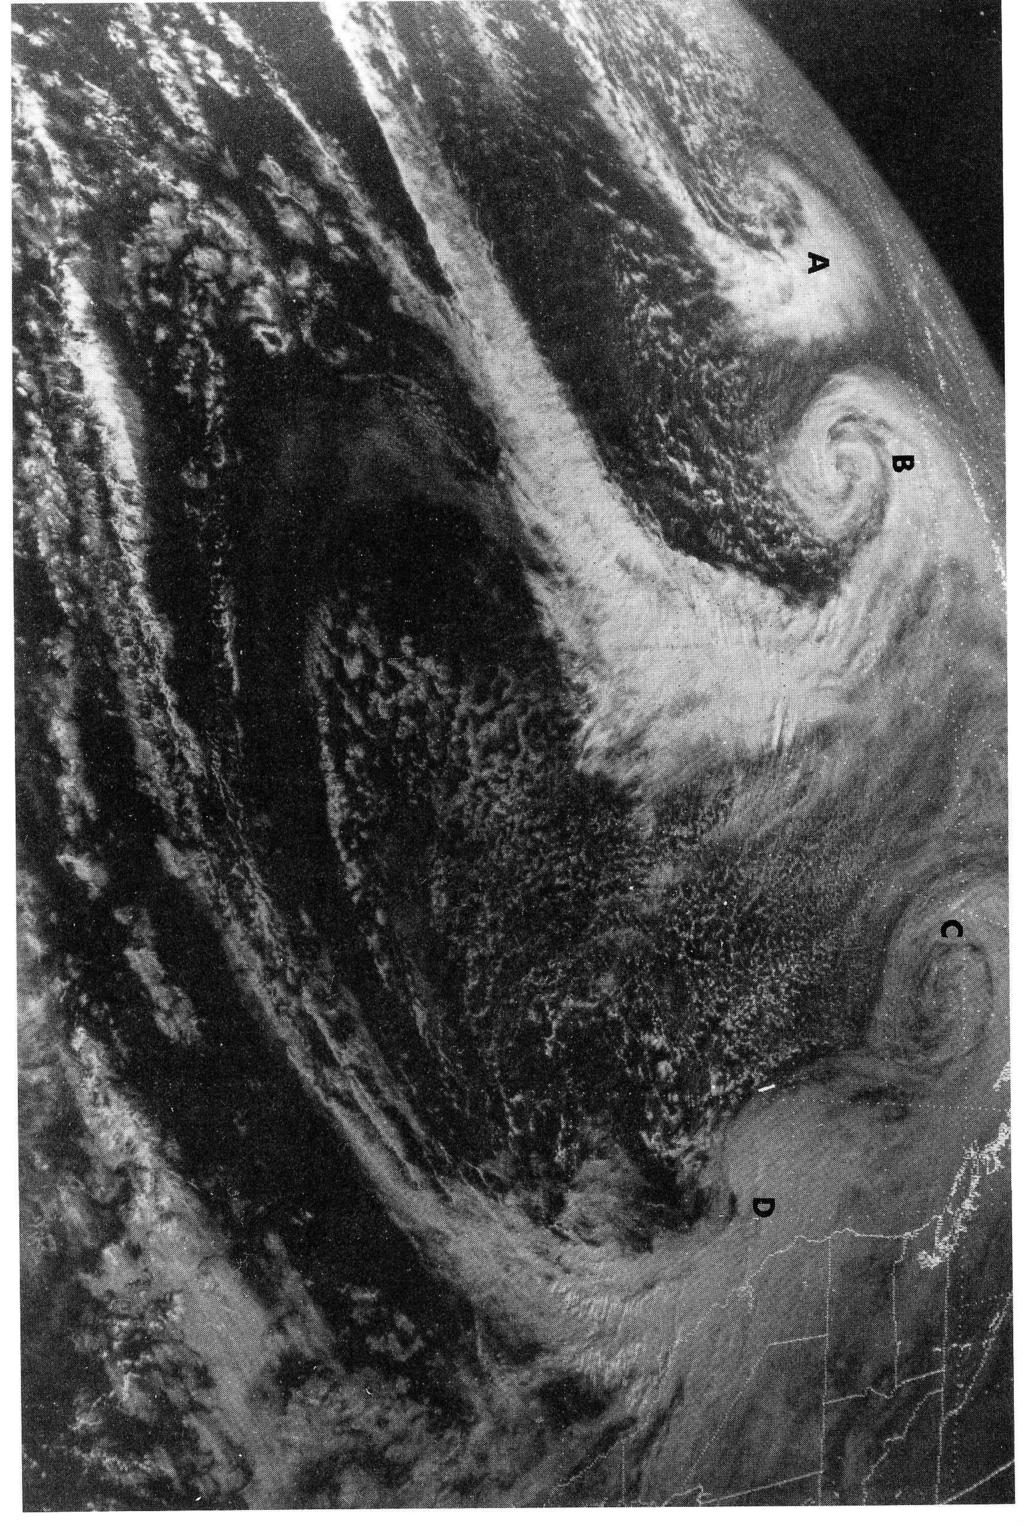 schematischen Illustrationen erfassen zu k onnen. In der folgenden Abbildung sind vier extratropische Zyklonen im Pazifischen Ozean erkennbar.